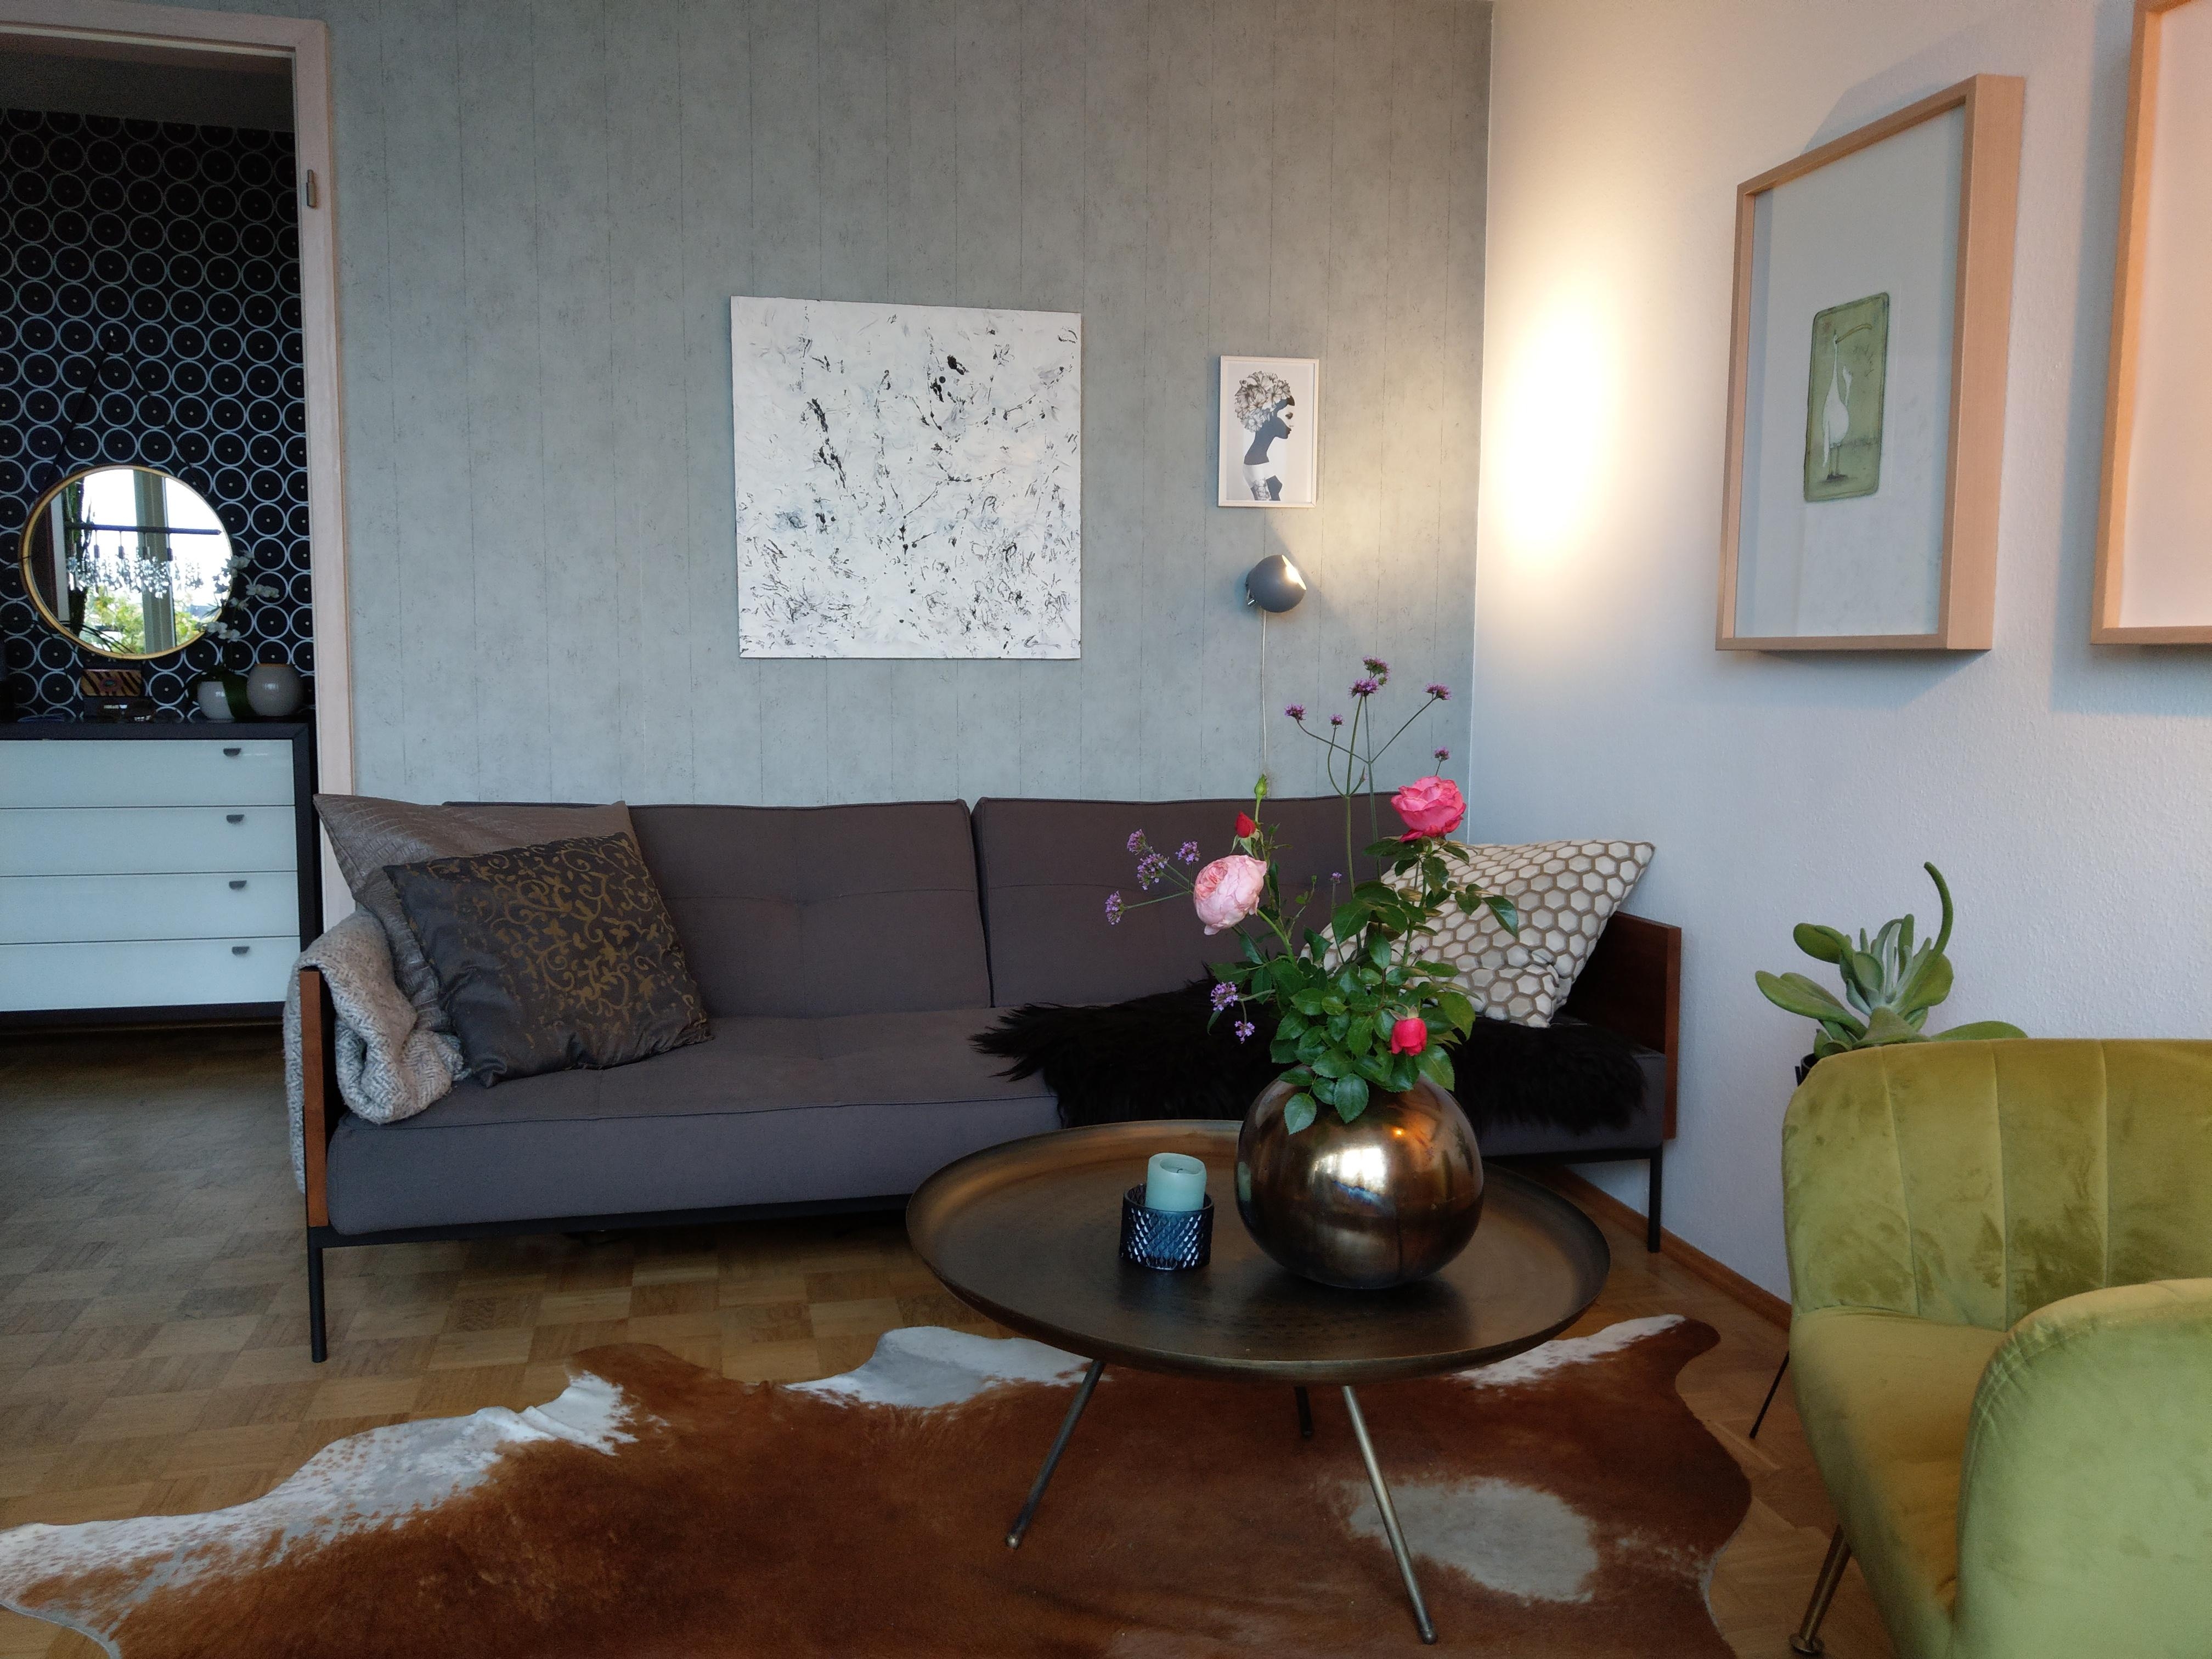 Mein gemütliches Sofa von  Designattack 
#schlafcouch #lieblingsvase #selfmade #mixedstyle #betonoptik